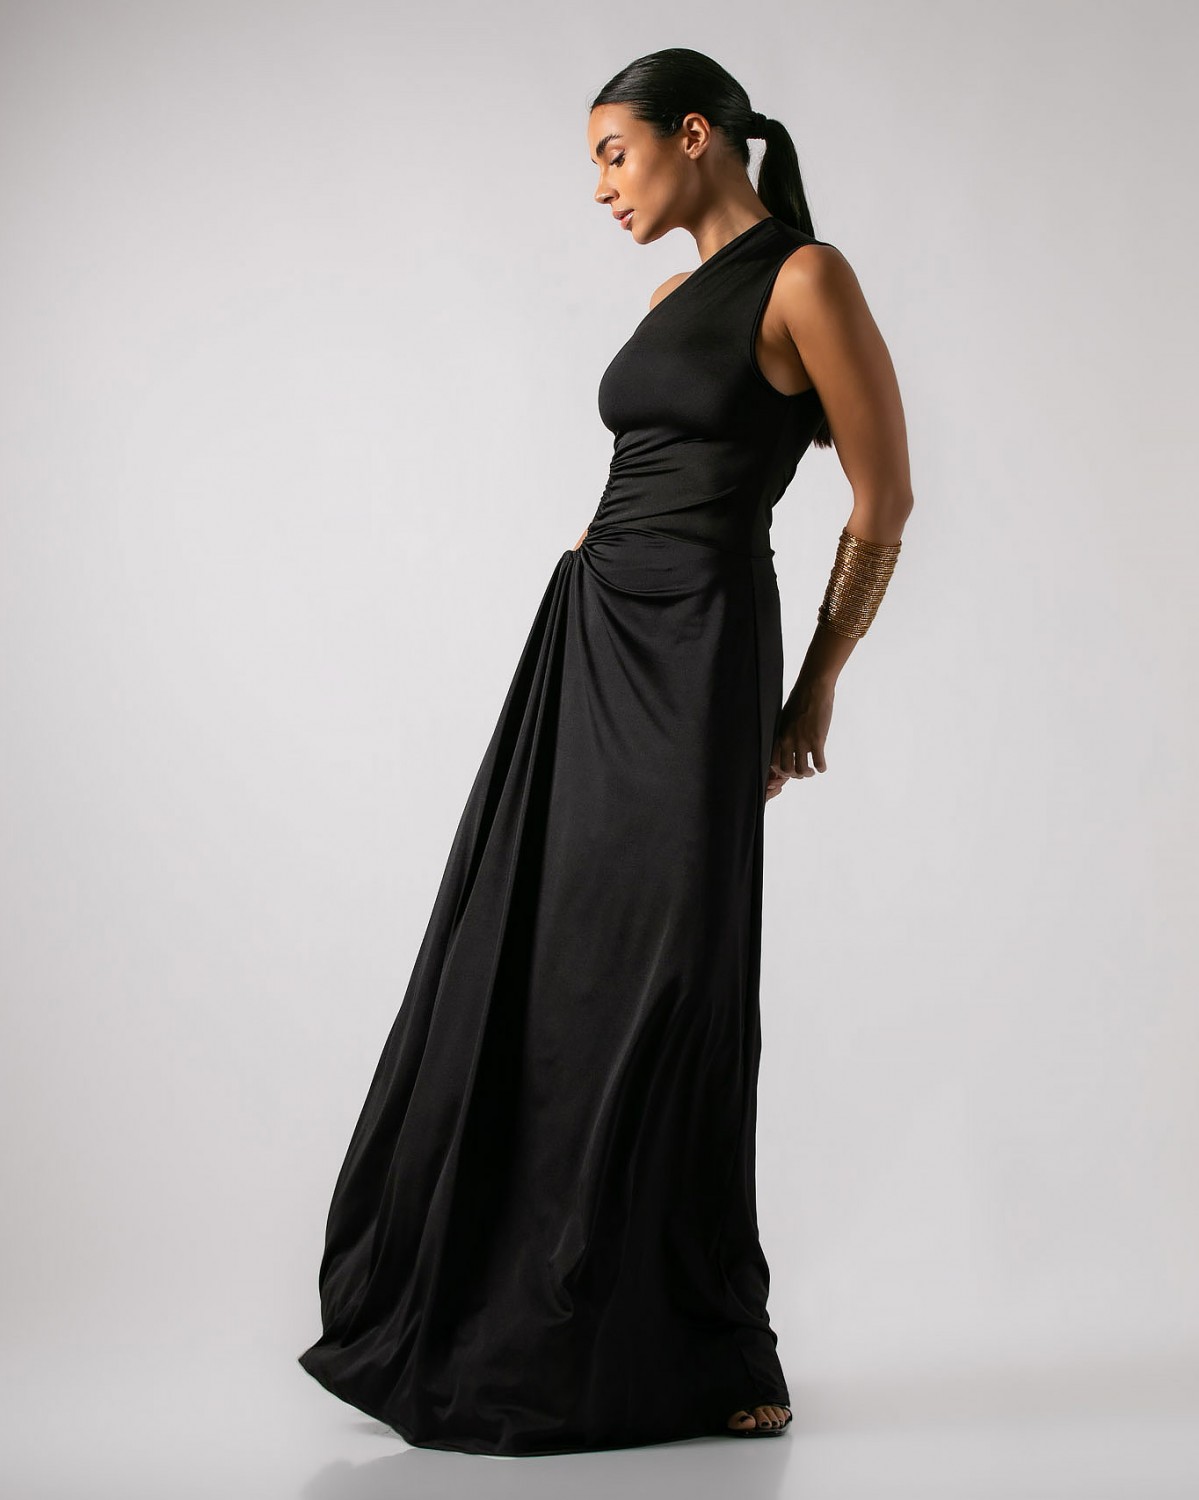 Φόρεμα με έναν ώμο, άνοιγμα στην μέση και σούρα Μαύρο 